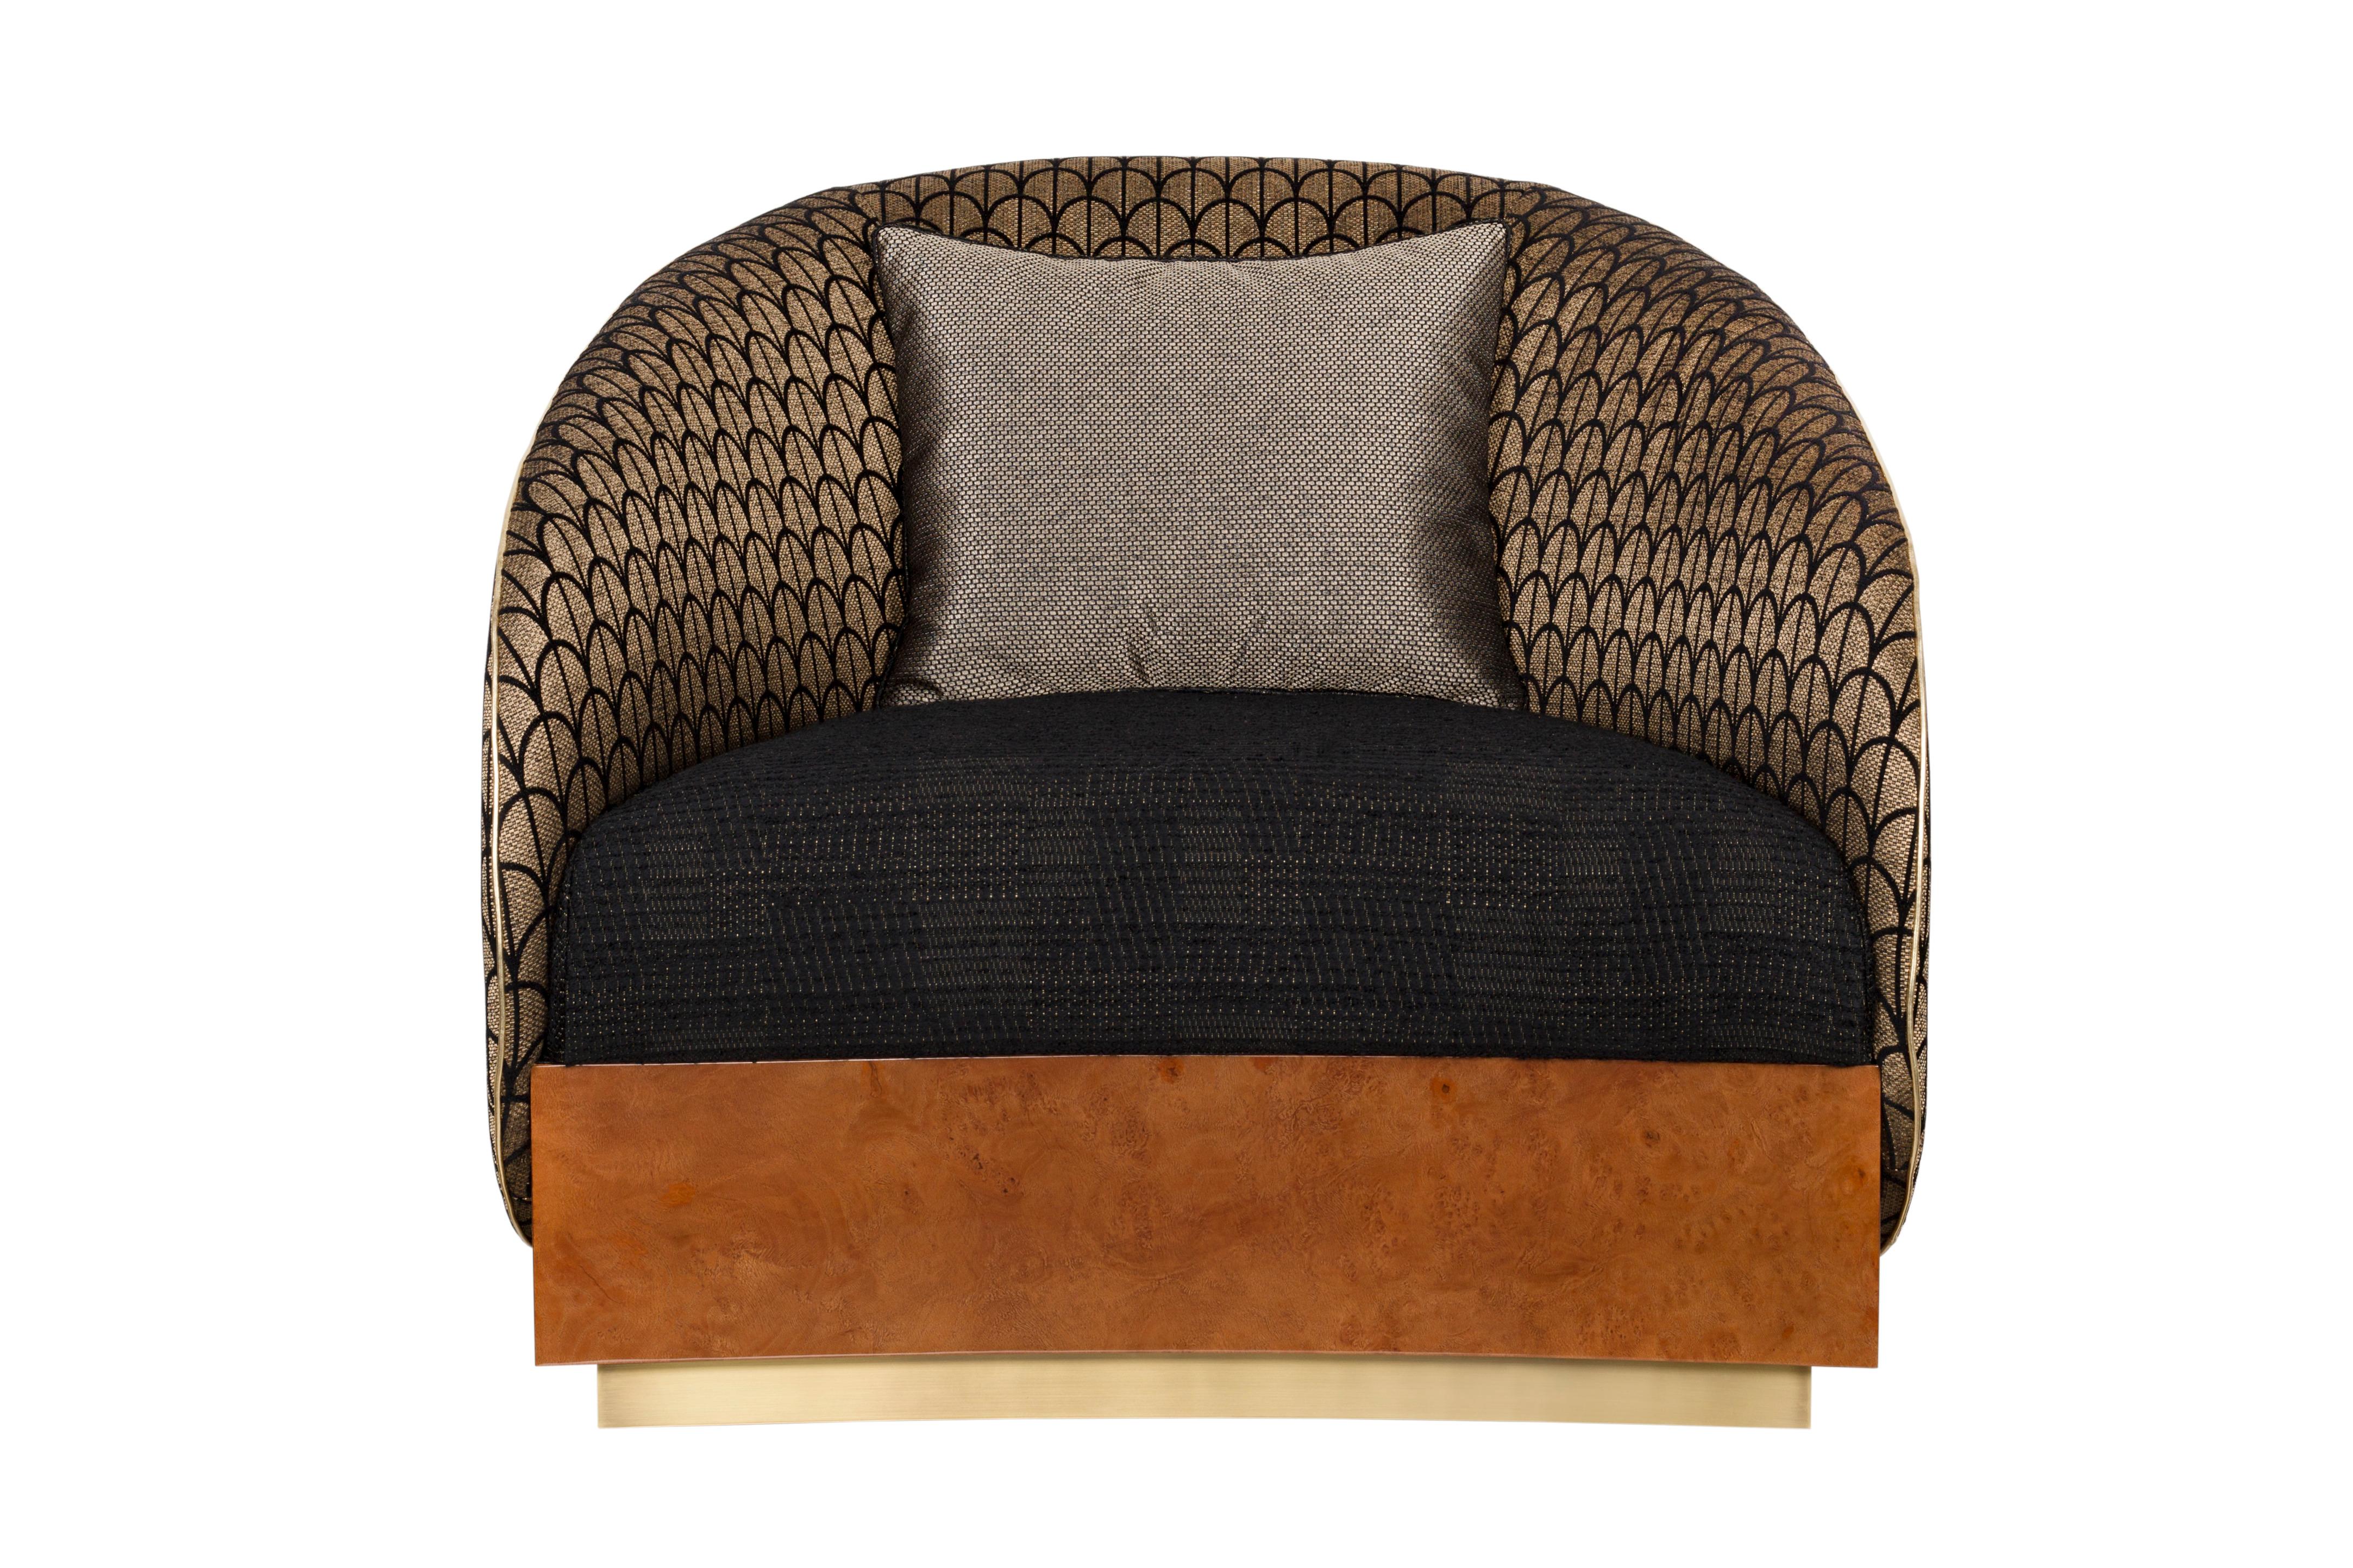 Halden Sessel, Modern Collection'S, handgefertigt in Portugal - Europa von GF Modern.

Der Sessel Halden ist inspiriert von der gleichnamigen norwegischen Grenzstadt an der Mündung des Flusses Tista. Die harmonische Kombination aus goldener Chenille